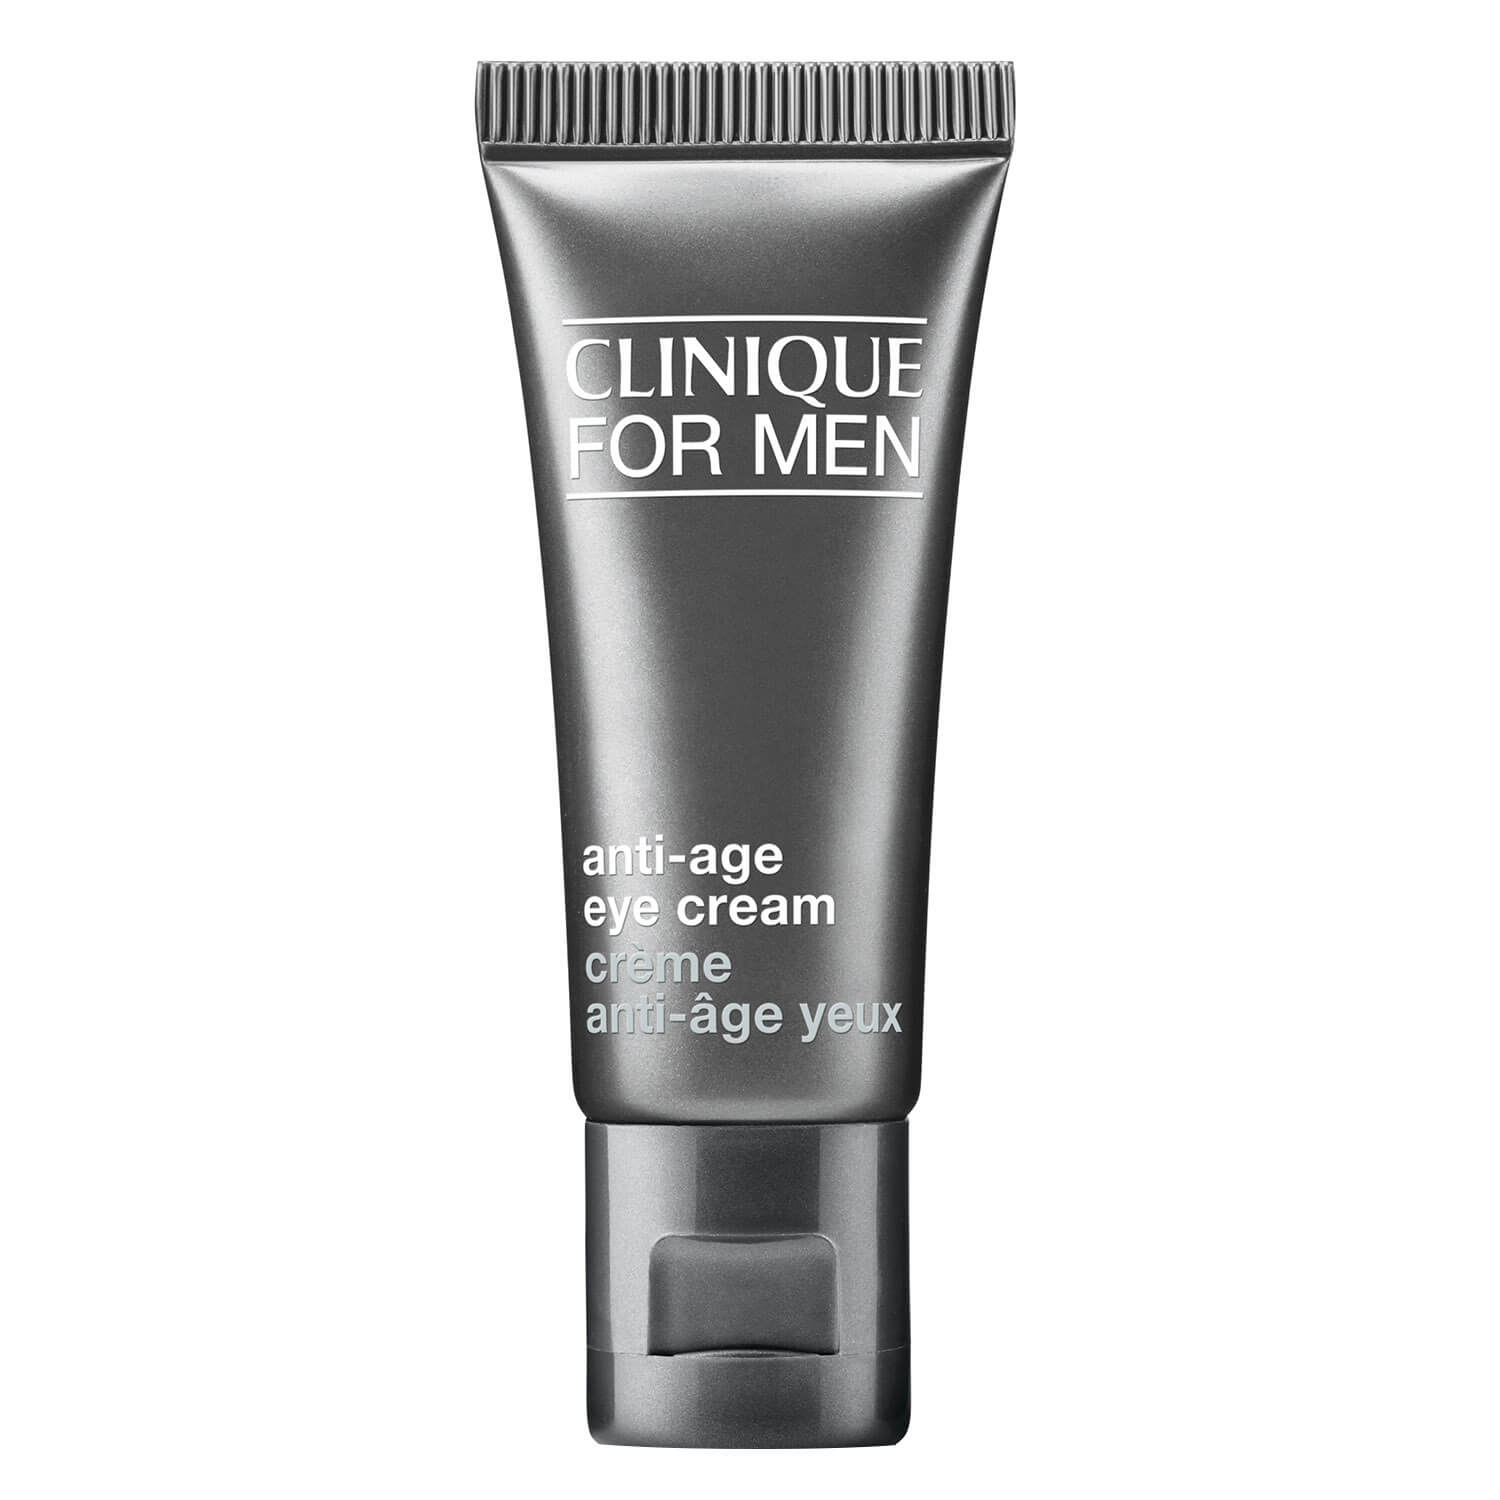 Produktbild von Clinique For Men - Anti-Age Eye Cream